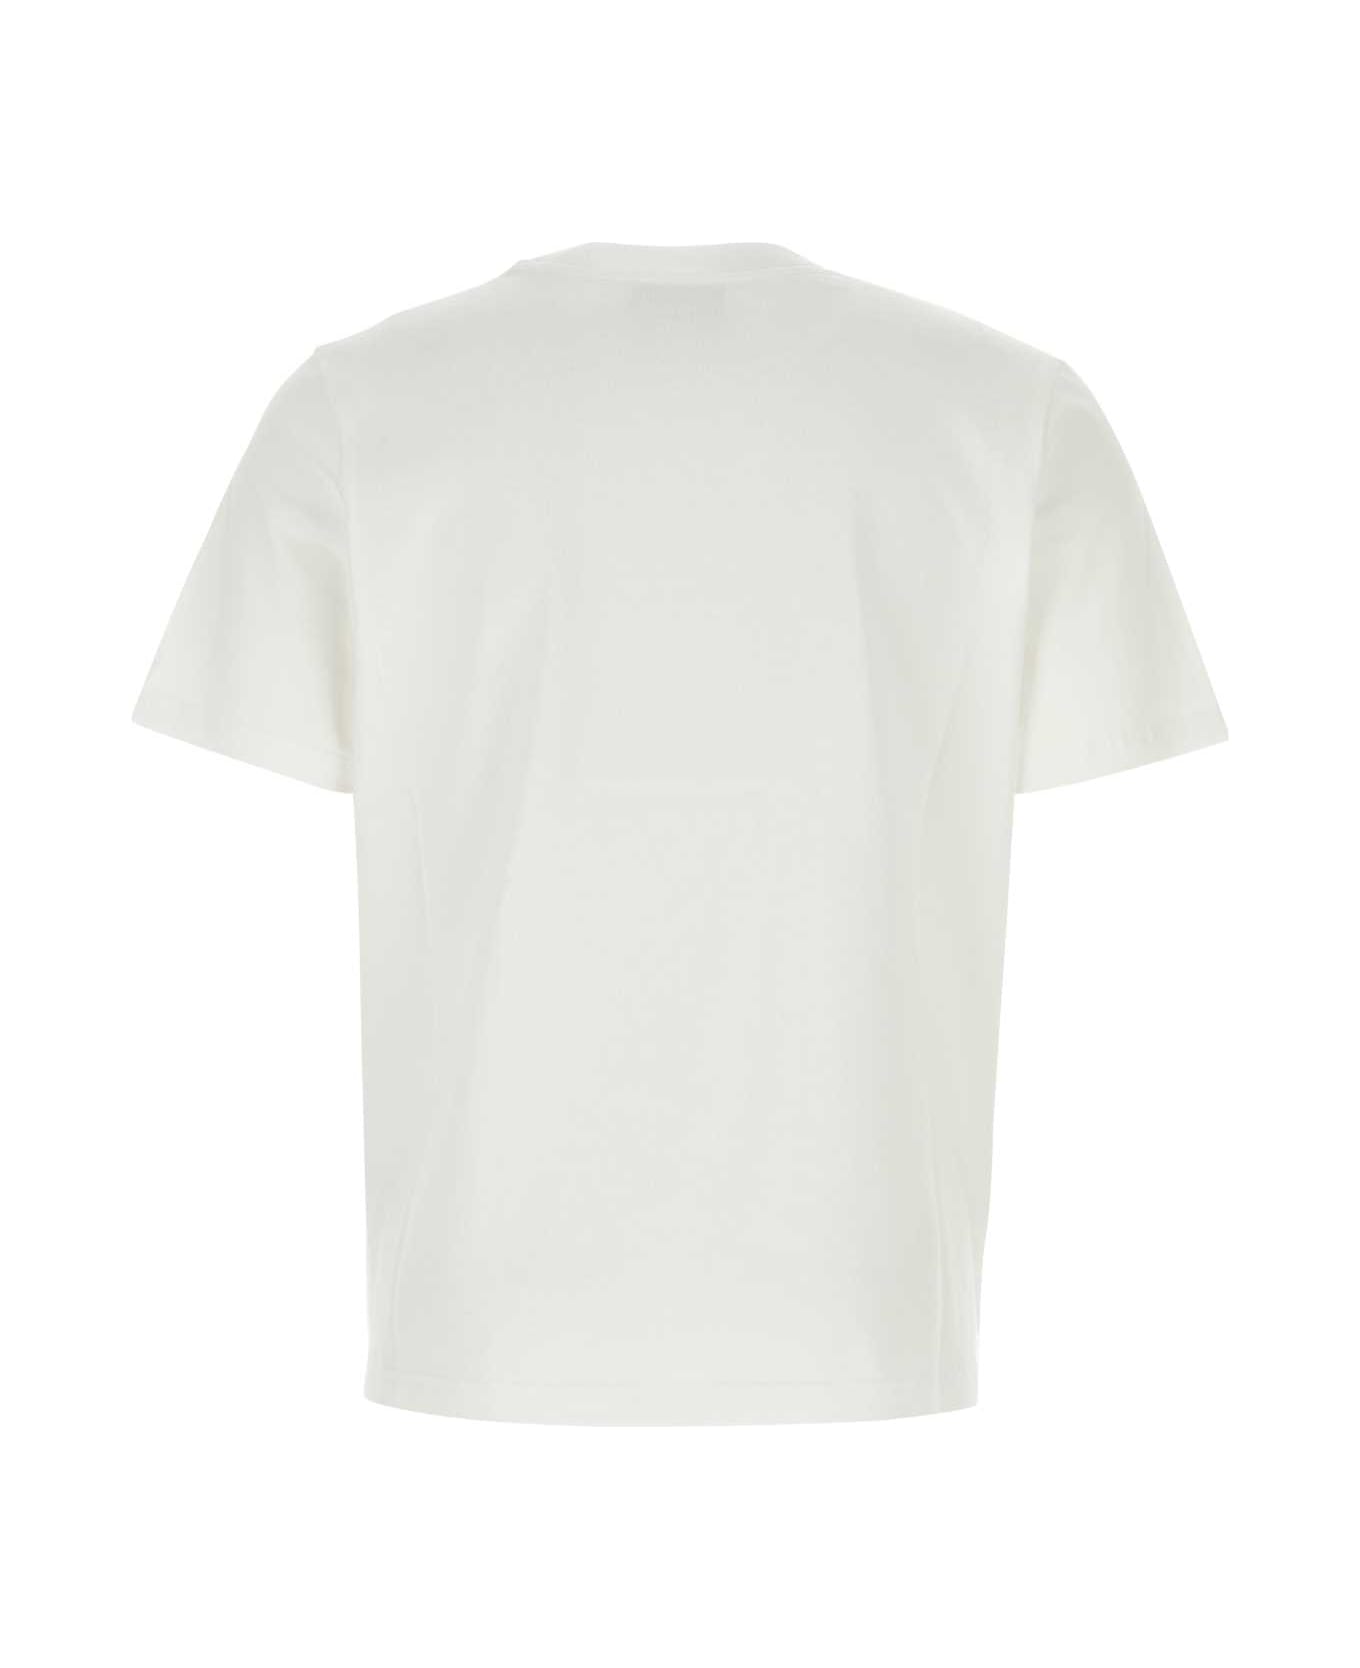 Casablanca White Cotton T-shirt - TENCLUICO Tシャツ